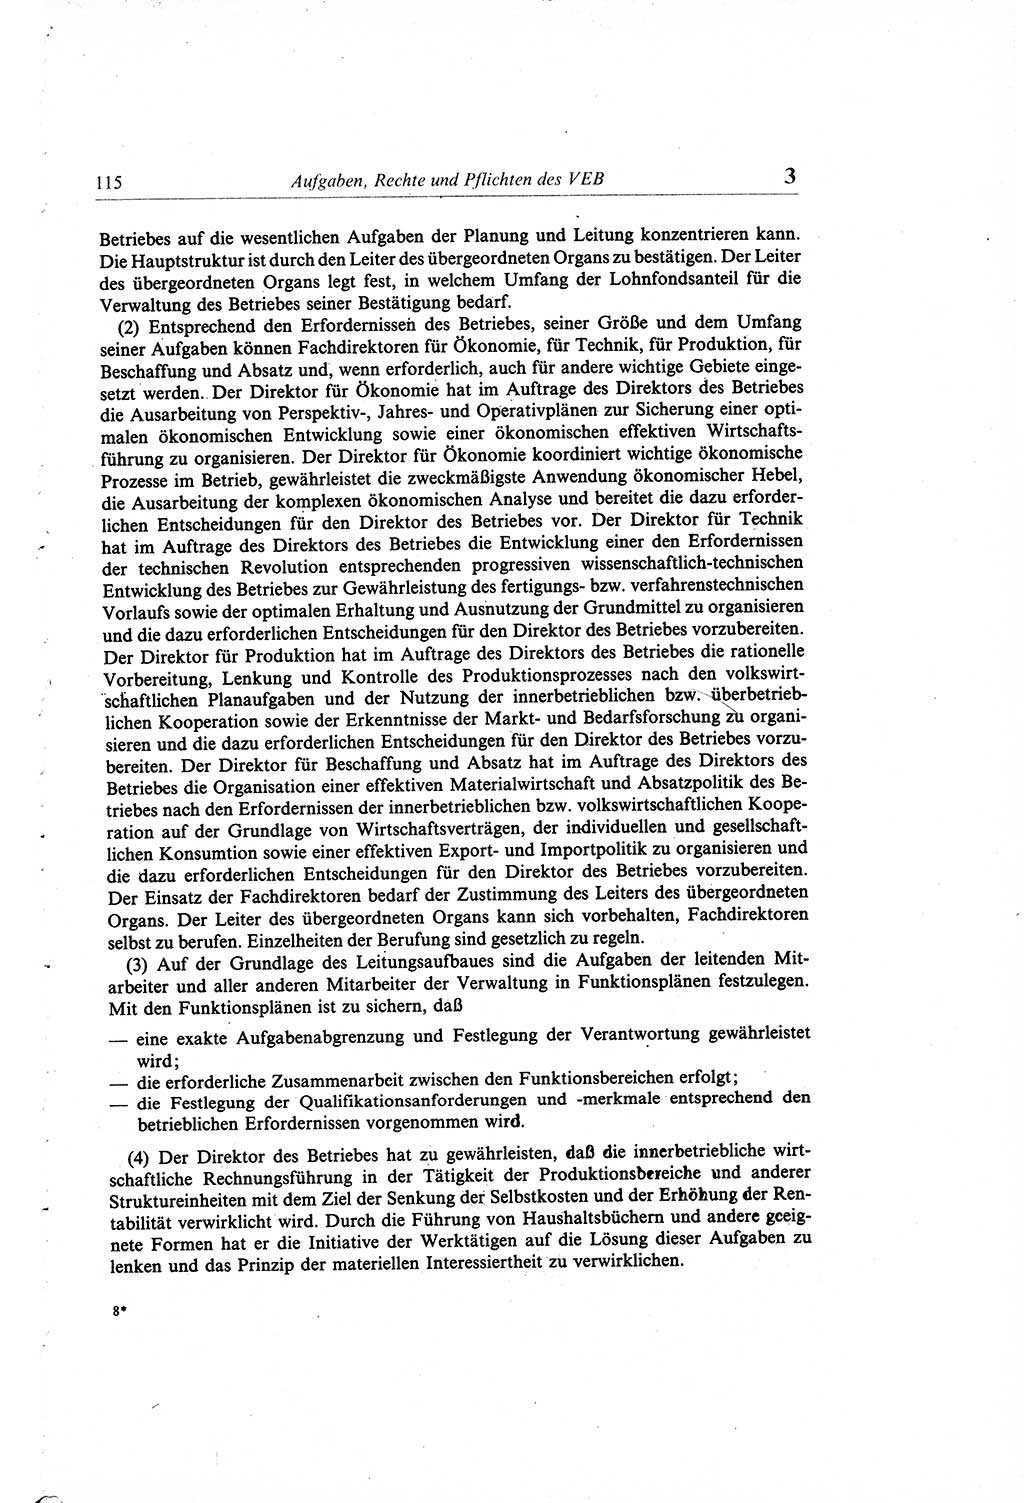 Gesetzbuch der Arbeit (GBA) und andere ausgewählte rechtliche Bestimmungen [Deutsche Demokratische Republik (DDR)] 1968, Seite 115 (GBA DDR 1968, S. 115)